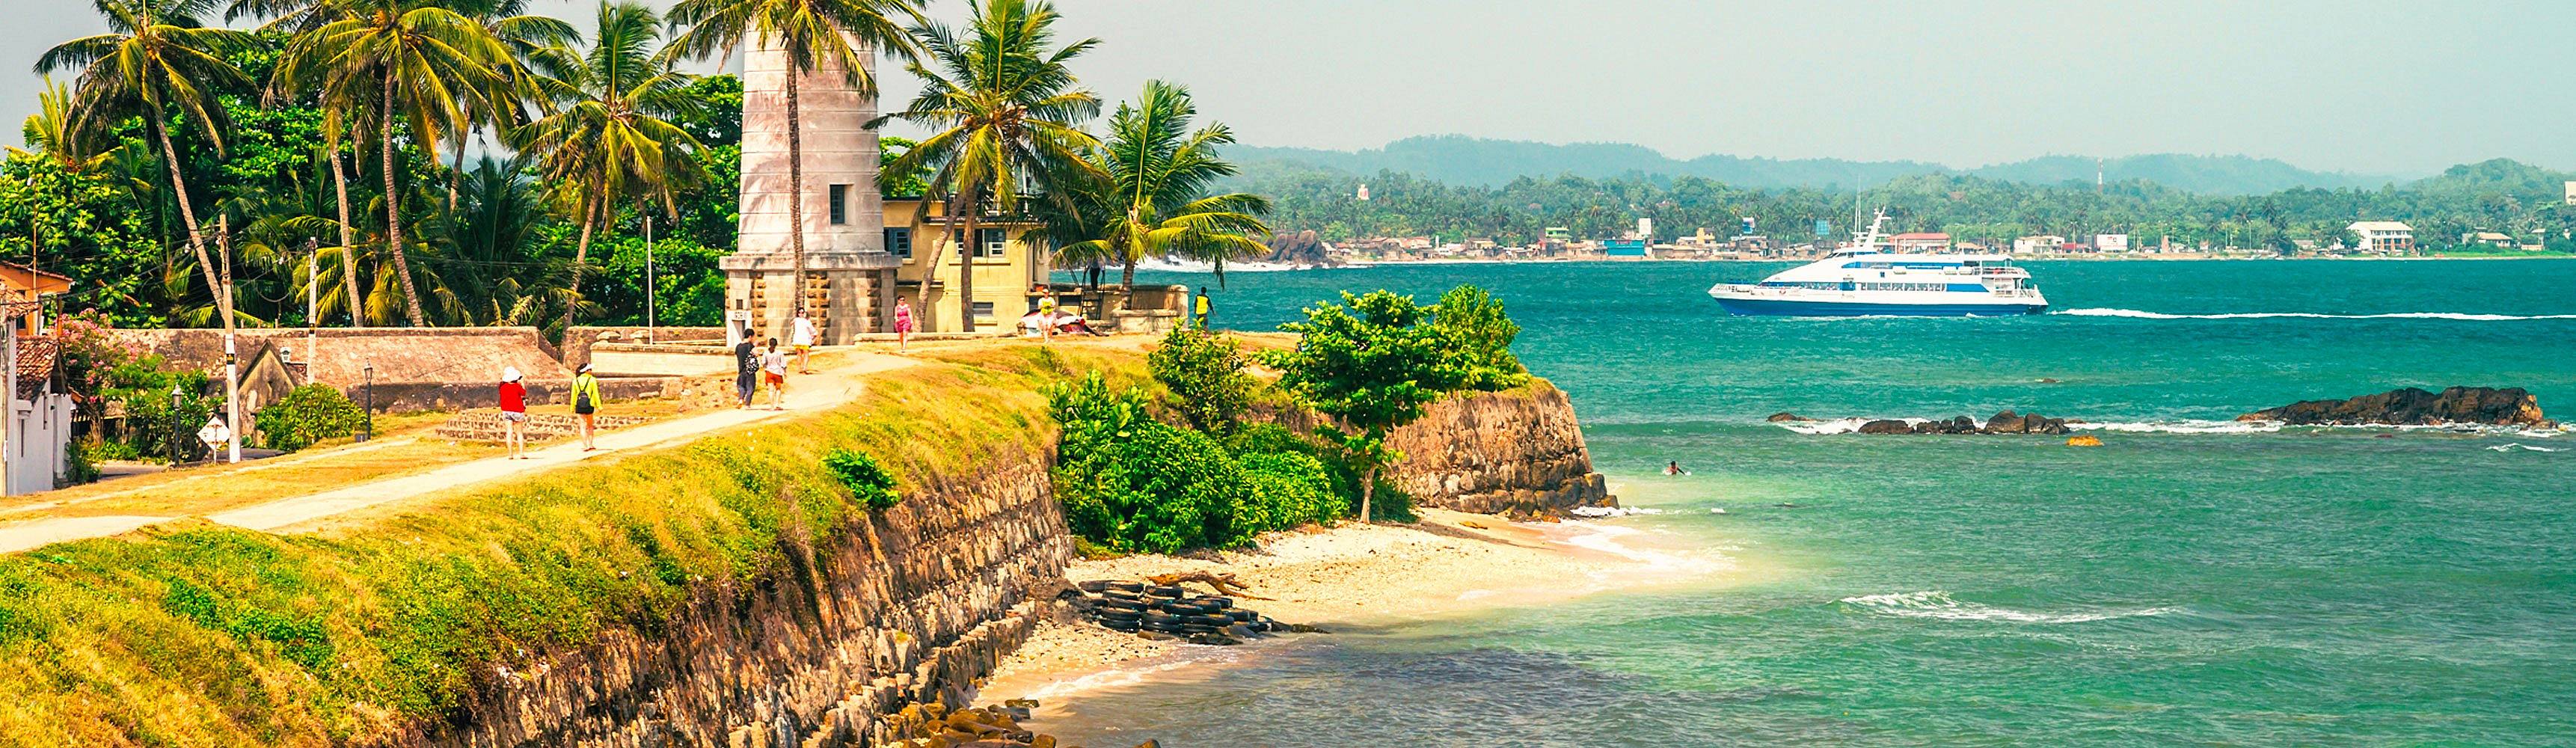 Viaggio al mare in Sri Lanka